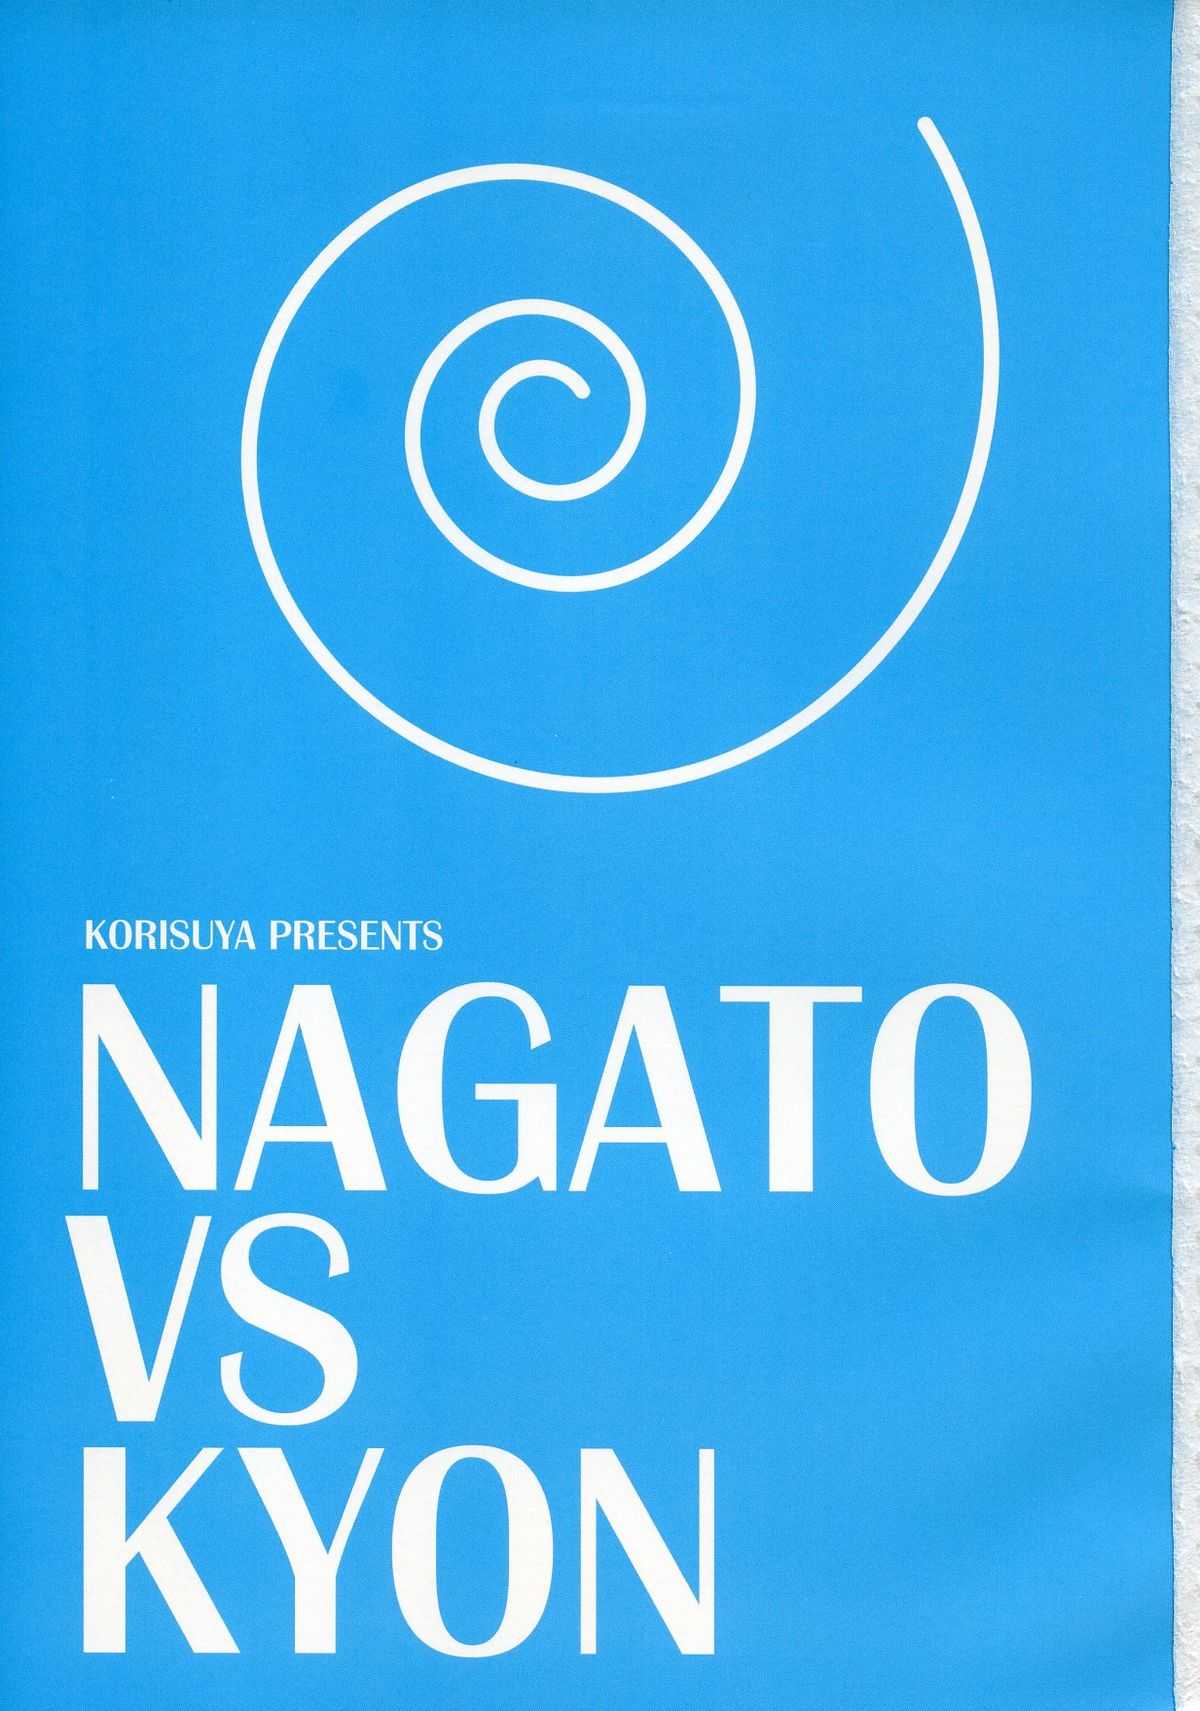 [Korisuya] Nagato vs Kyon 